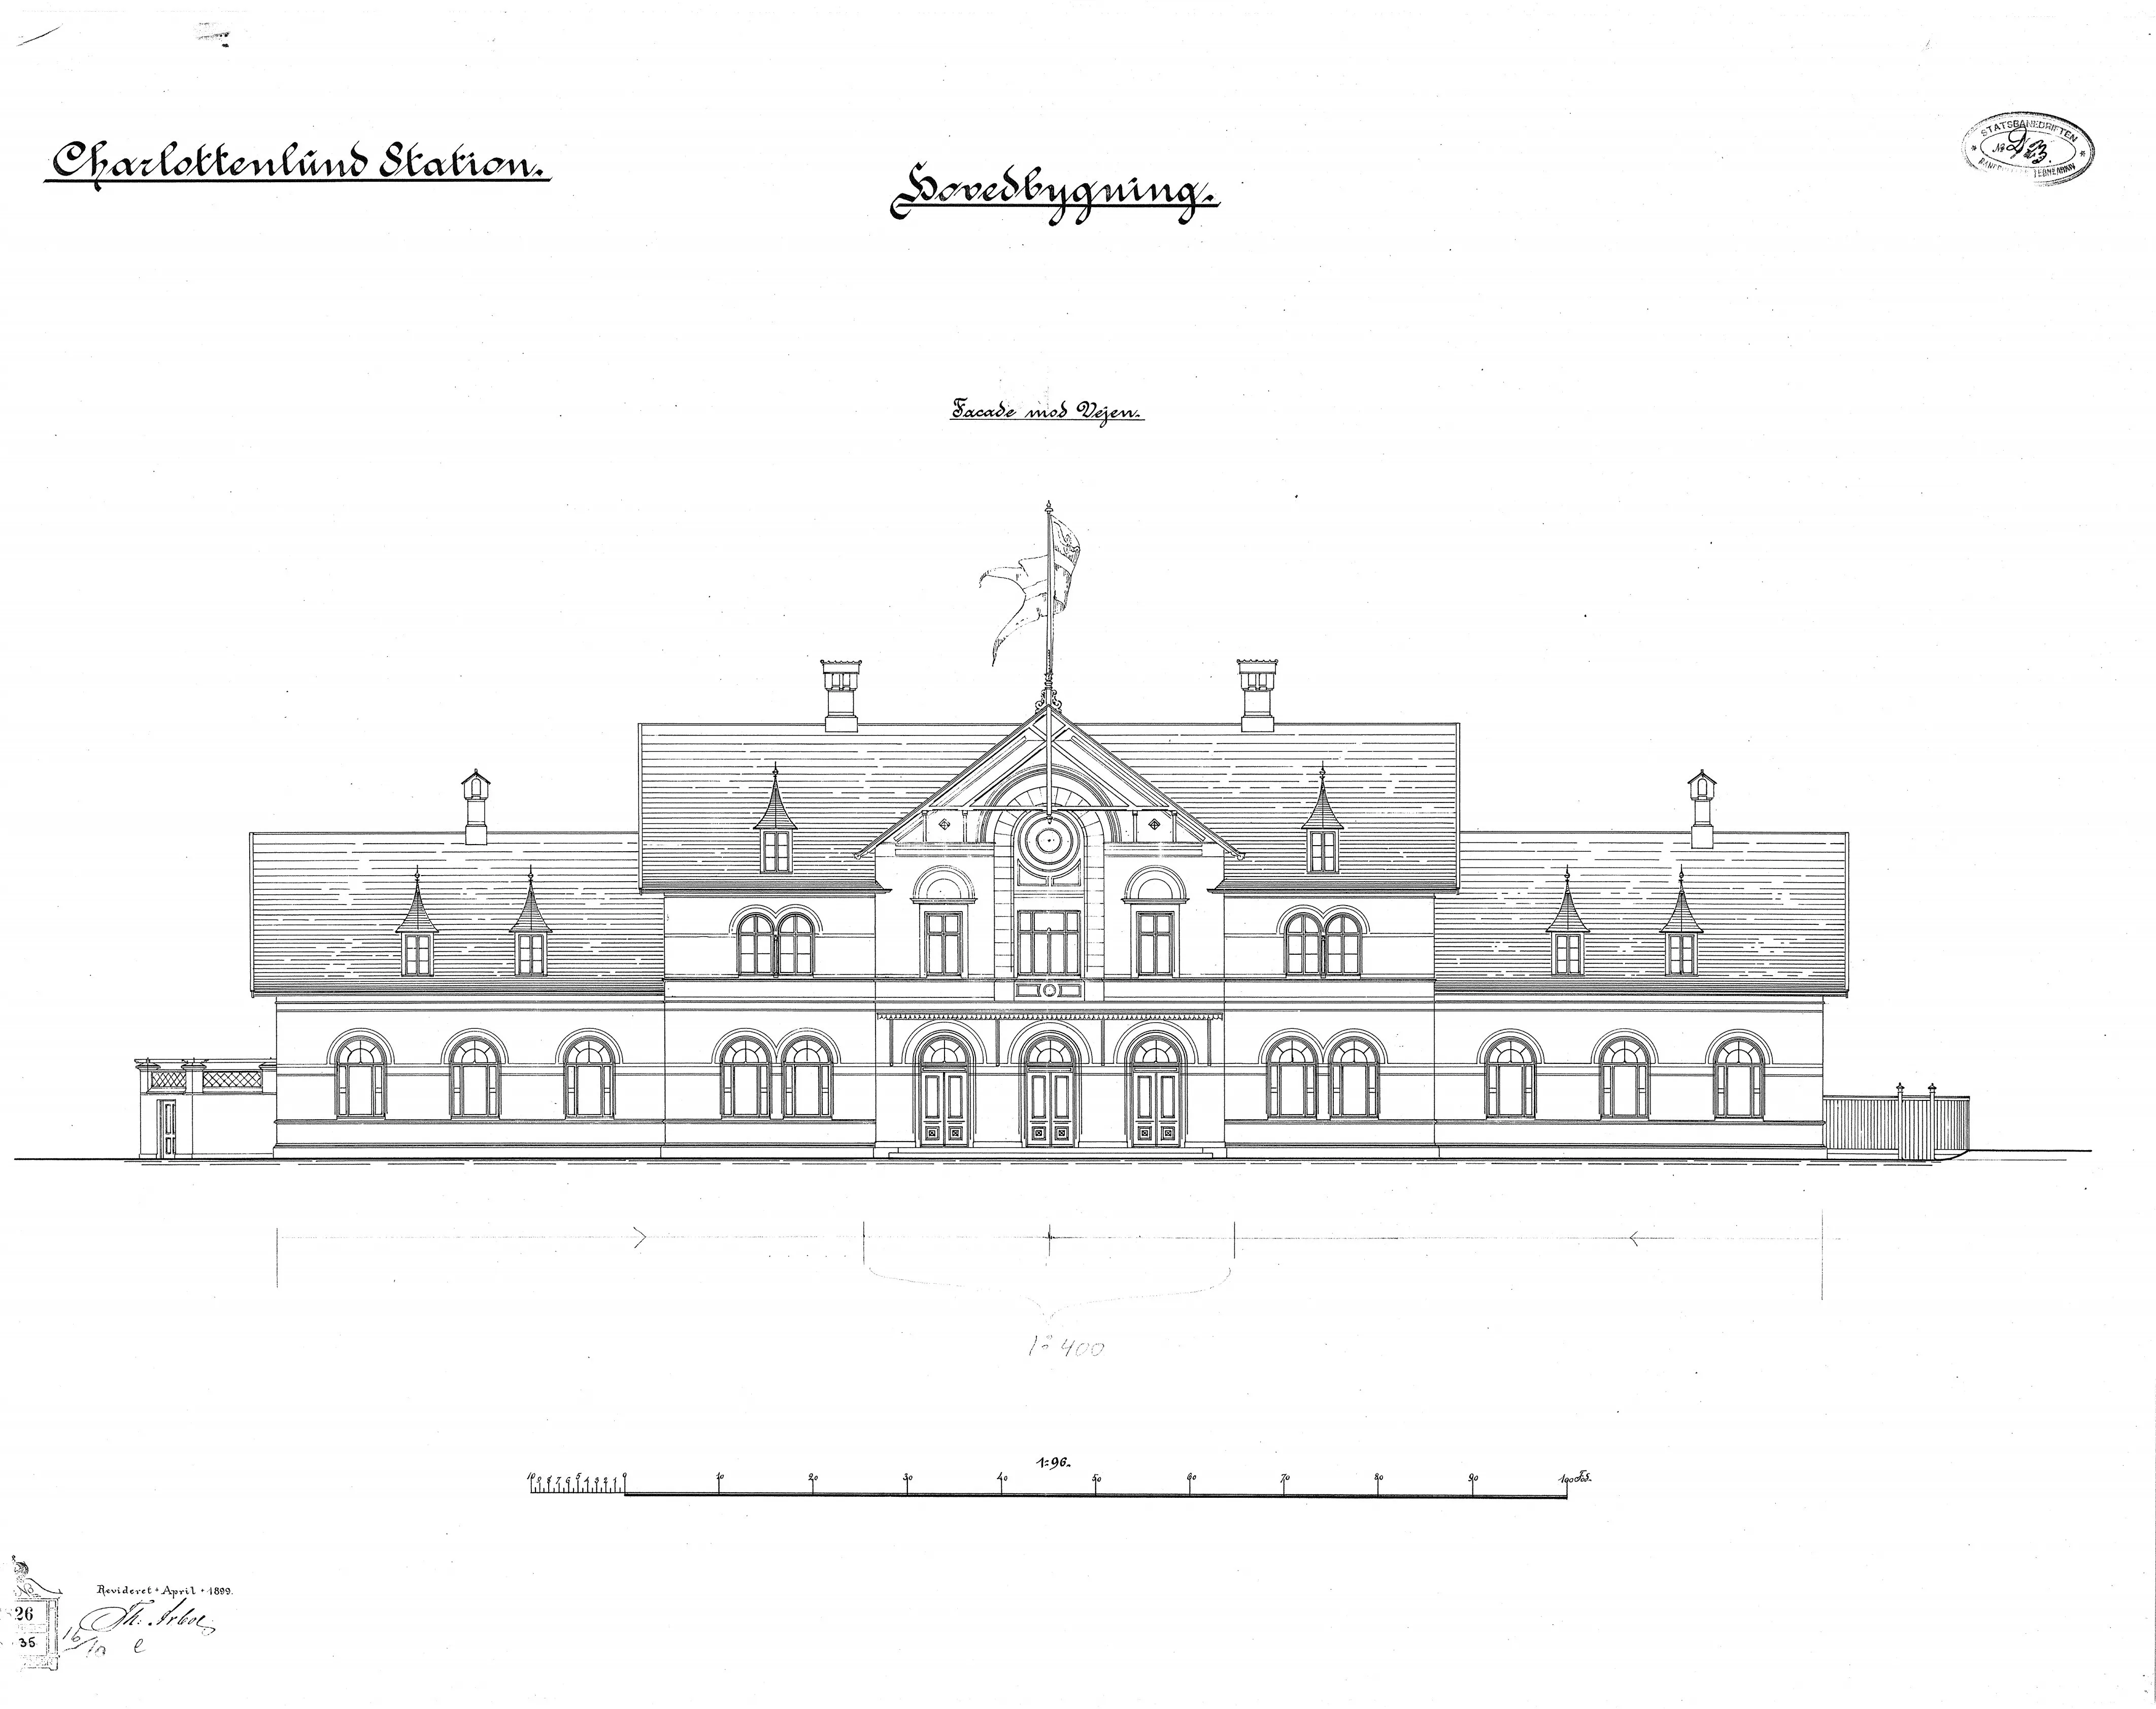 Tegning af Charlottenlund Station.